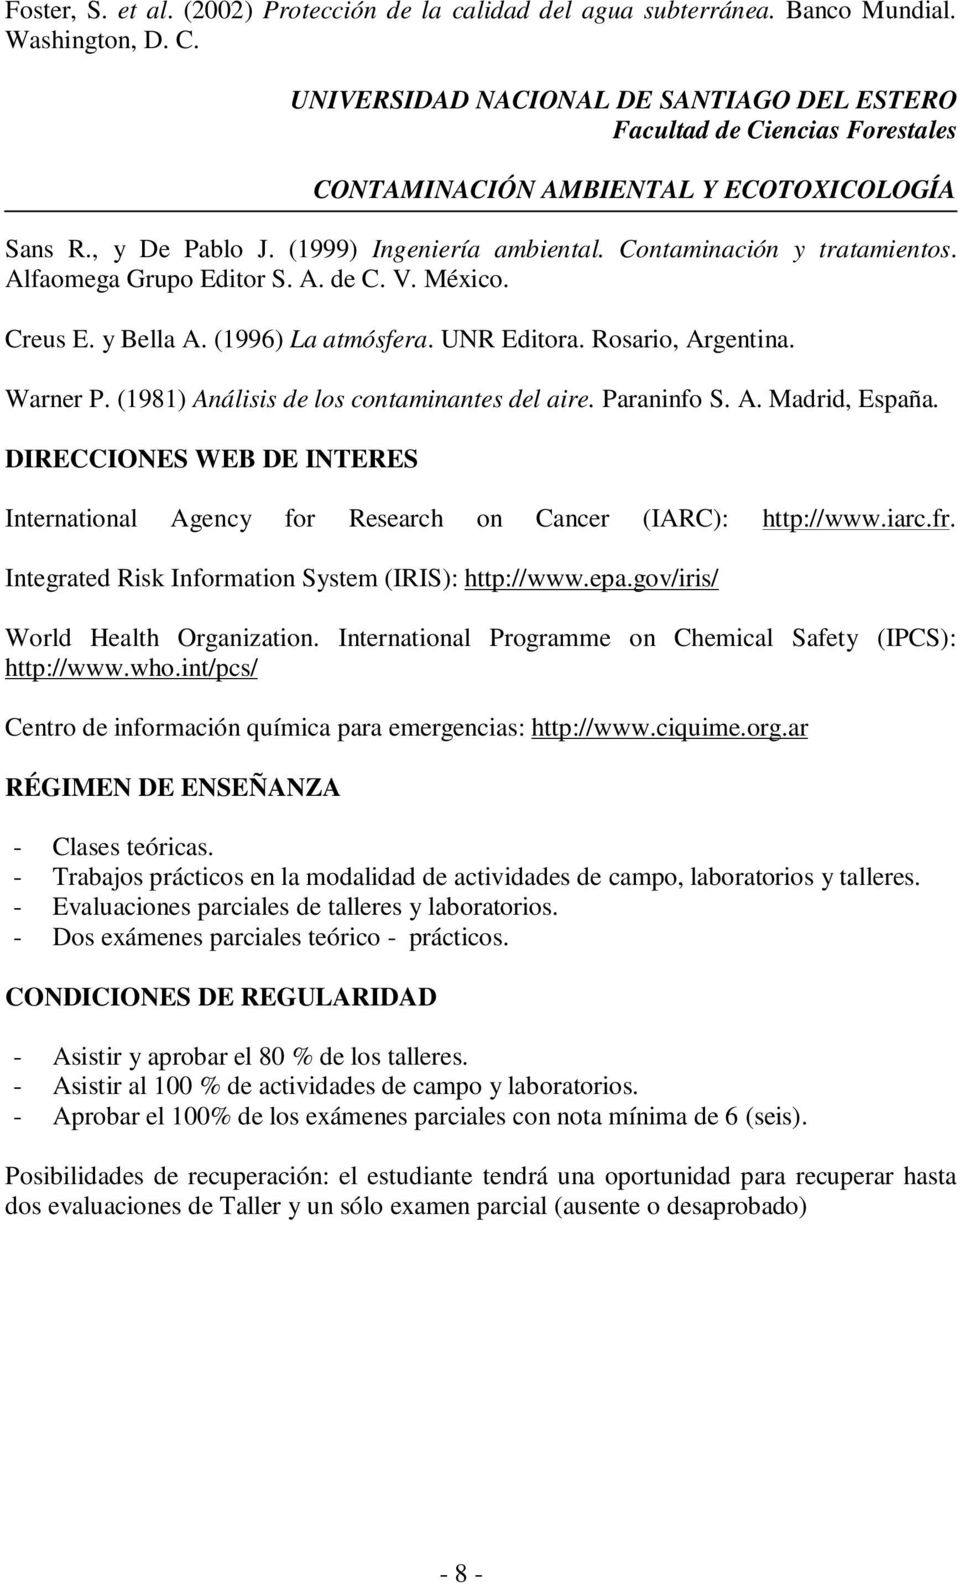 (1981) Análisis de los contaminantes del aire. Paraninfo S. A. Madrid, España. DIRECCIONES WEB DE INTERES International Agency for Research on Cancer (IARC): http://www.iarc.fr.